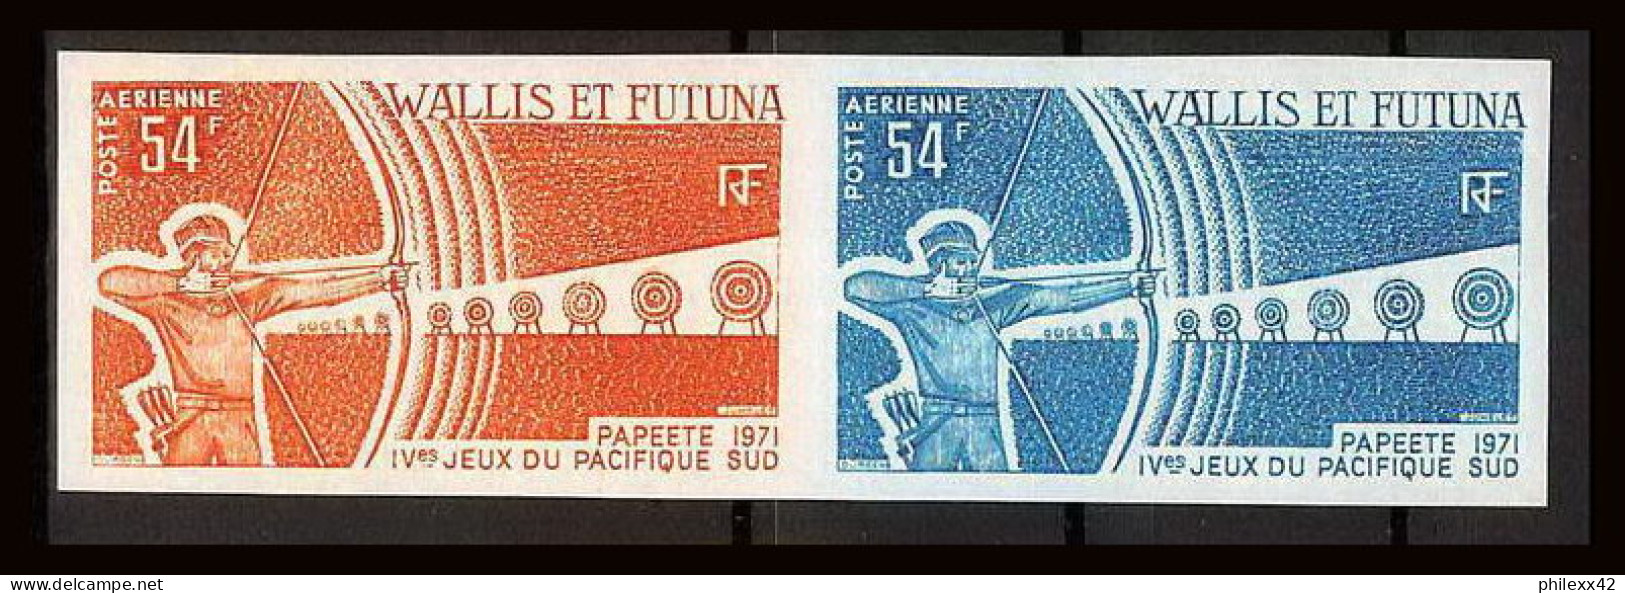 92552b Wallis Et Futuna PA N°40 Tir à L'arc Archery Jeux Du Pacific 1971 Paire Essais Proof Non Dentelé Imperf ** MNH  - Tiro Al Arco